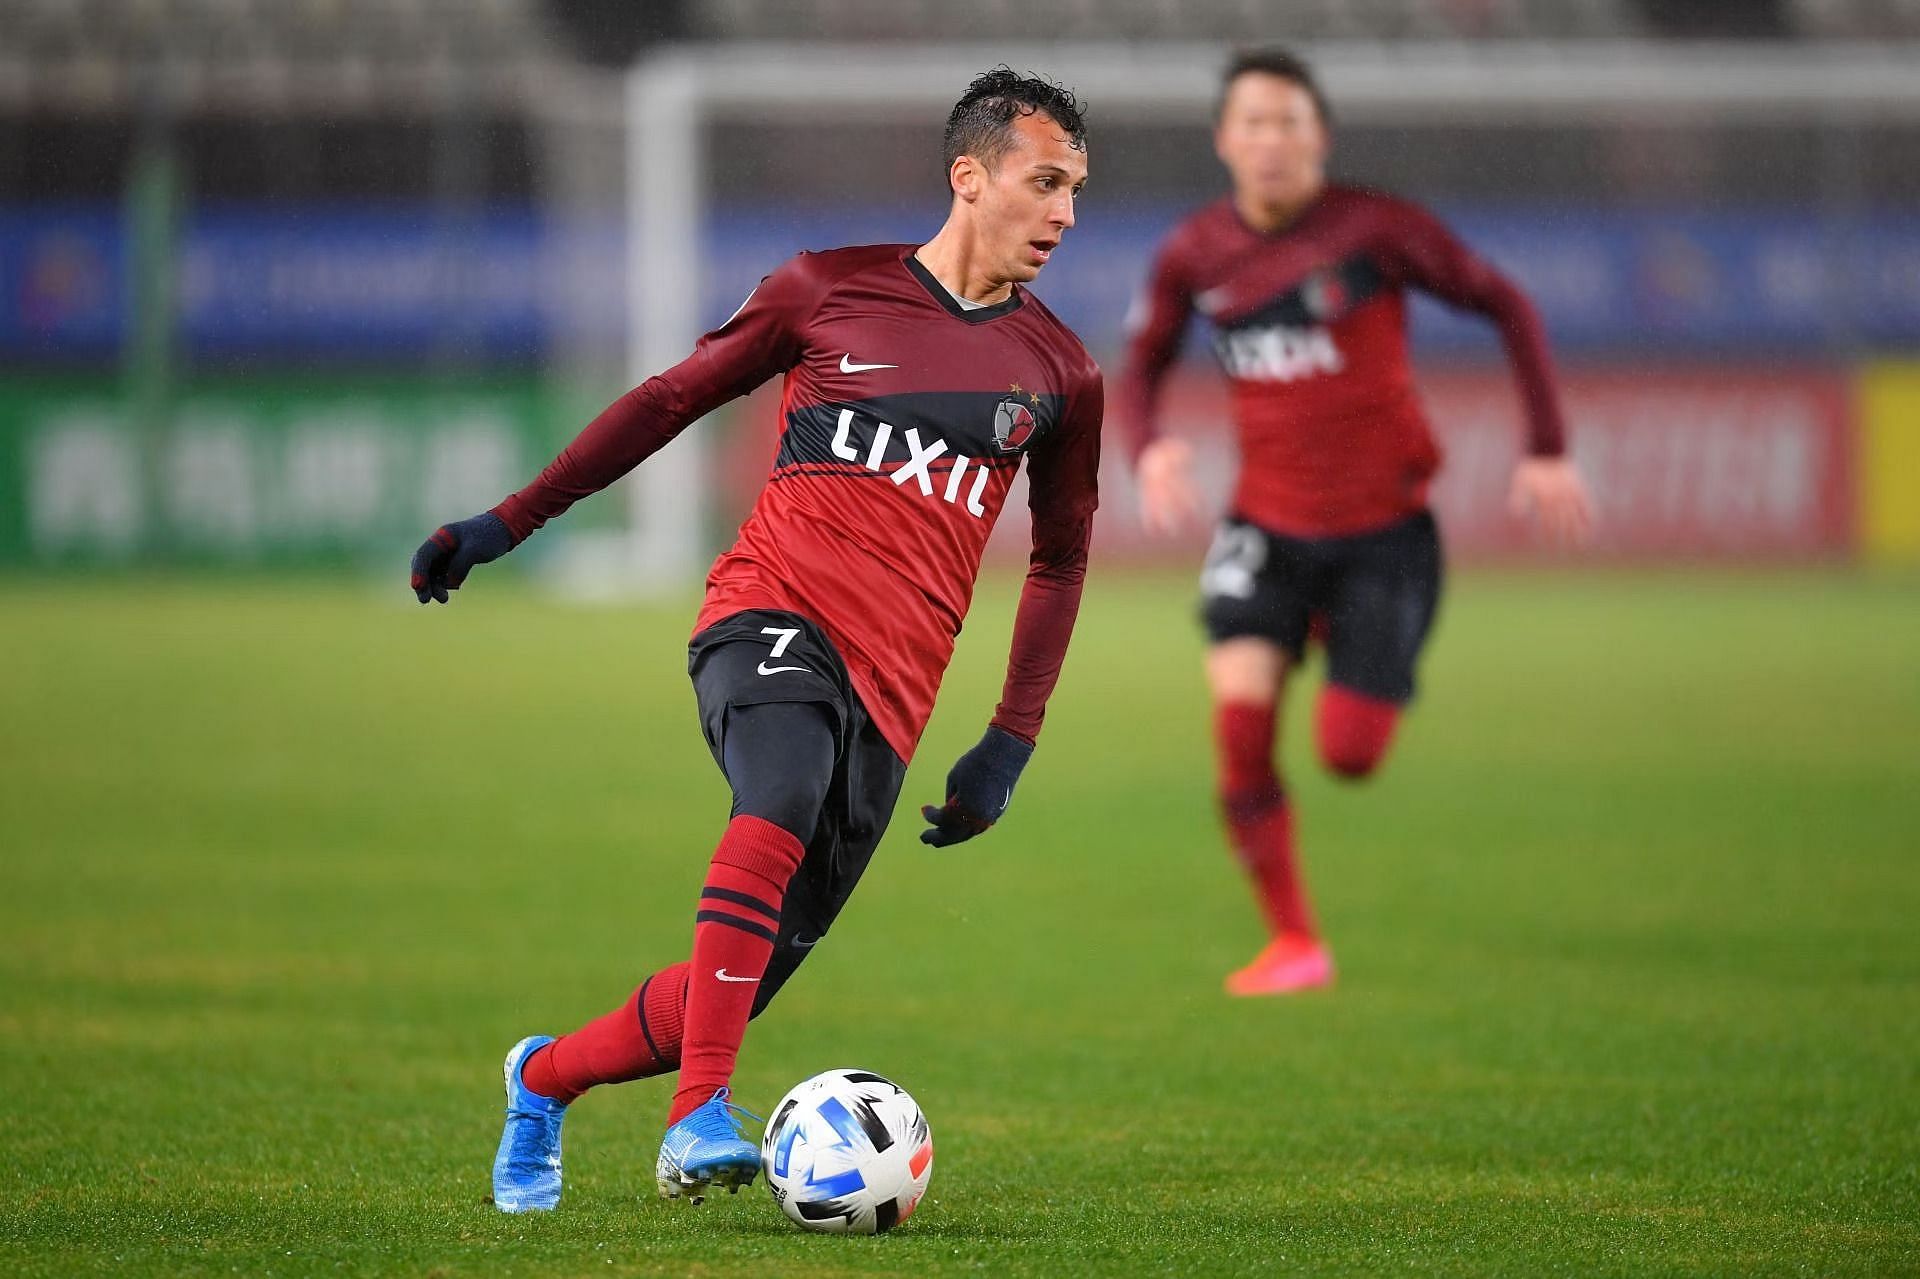 Kashima Antlers take on FC Tokyo this weekend